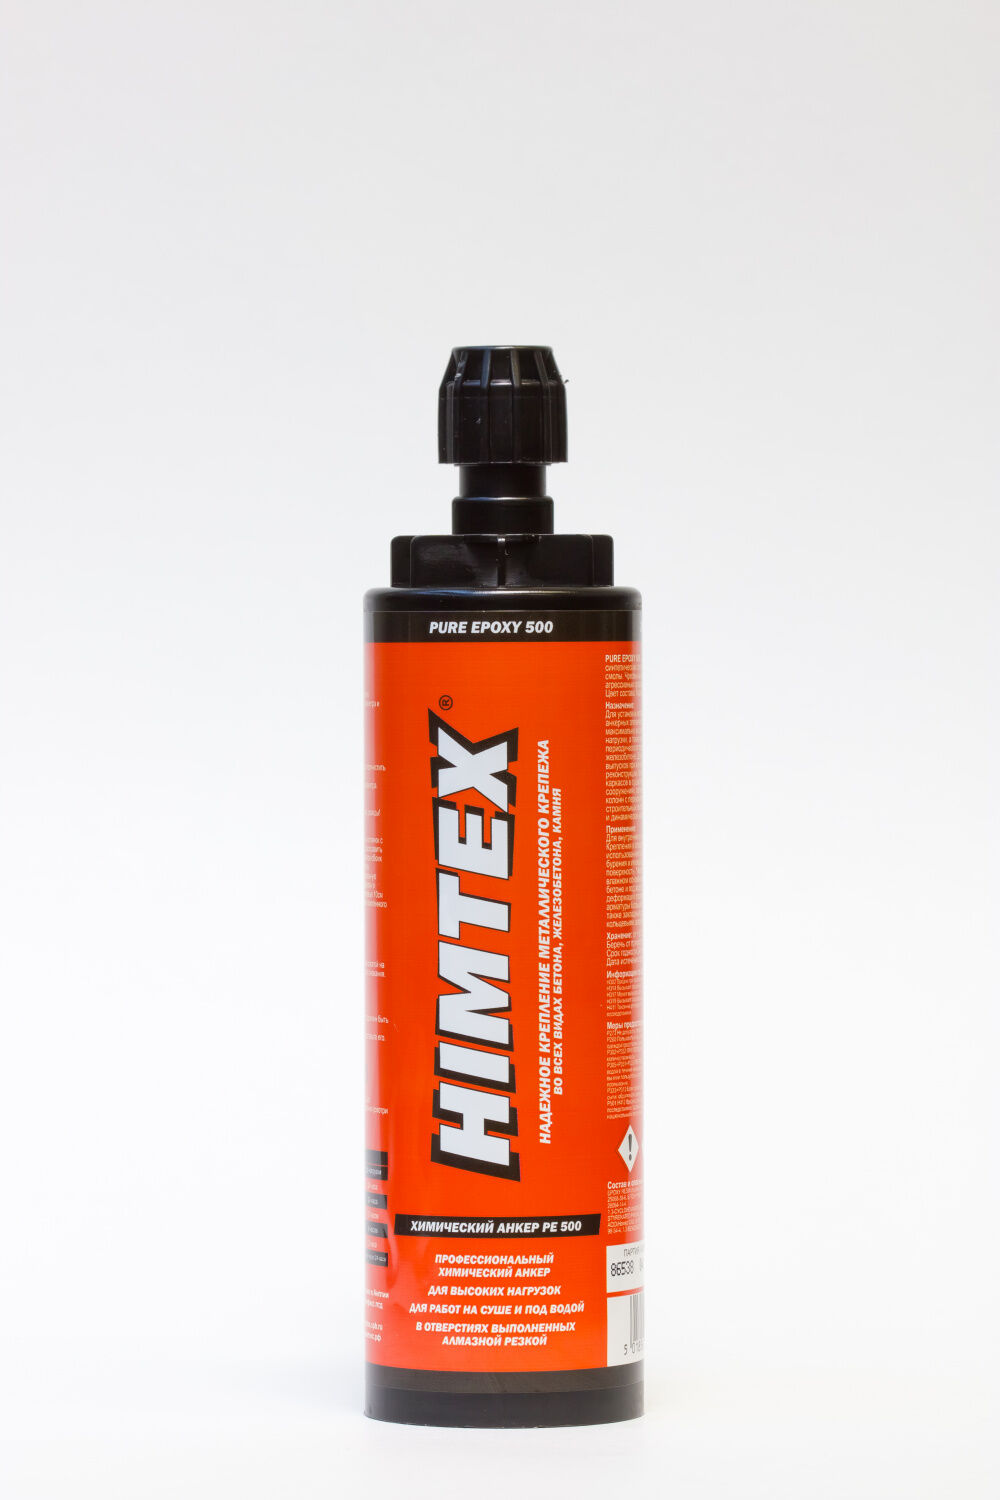 Профессиональный химический анкер HIMTEX PE-500, 385 ml